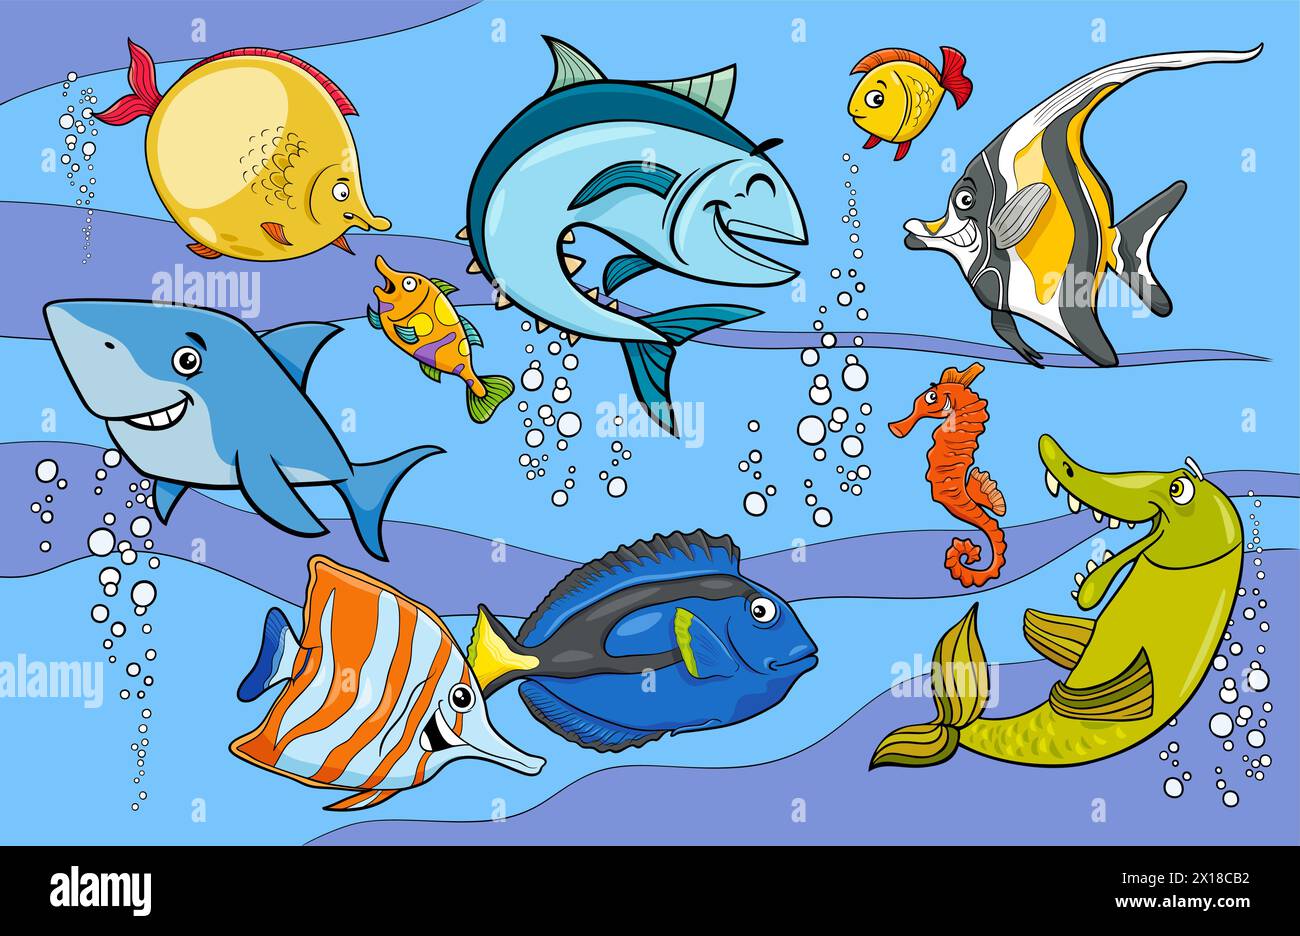 Illustrations de dessins animés du groupe de personnages de poissons et d'animaux marins Illustration de Vecteur